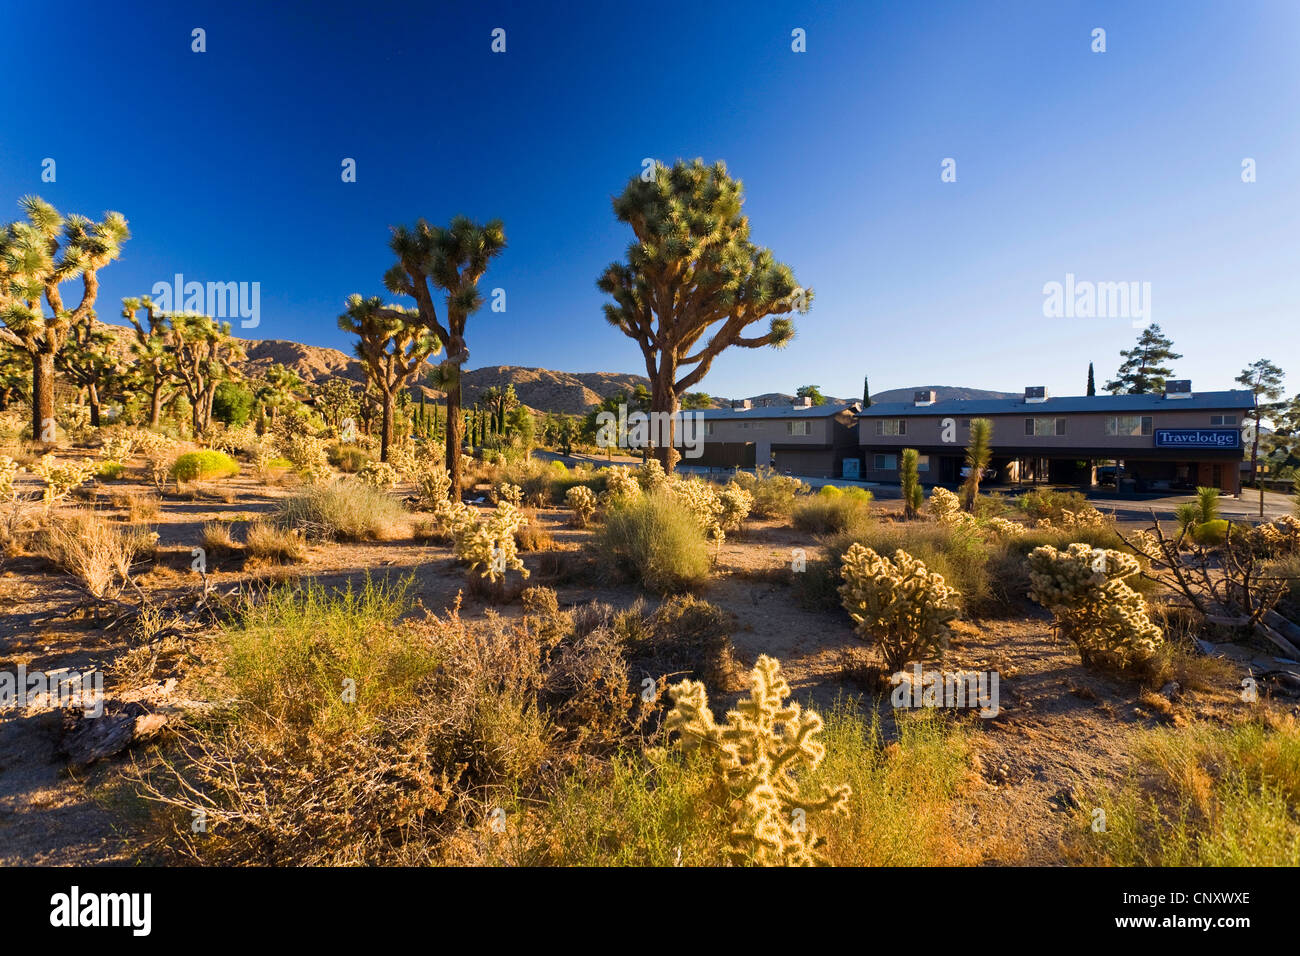 Joshua tree (Yucca brevifolia), con altri cactus accanto a un motel, Stati Uniti, California, Mojave, Travelodge Yucca Valley Foto Stock